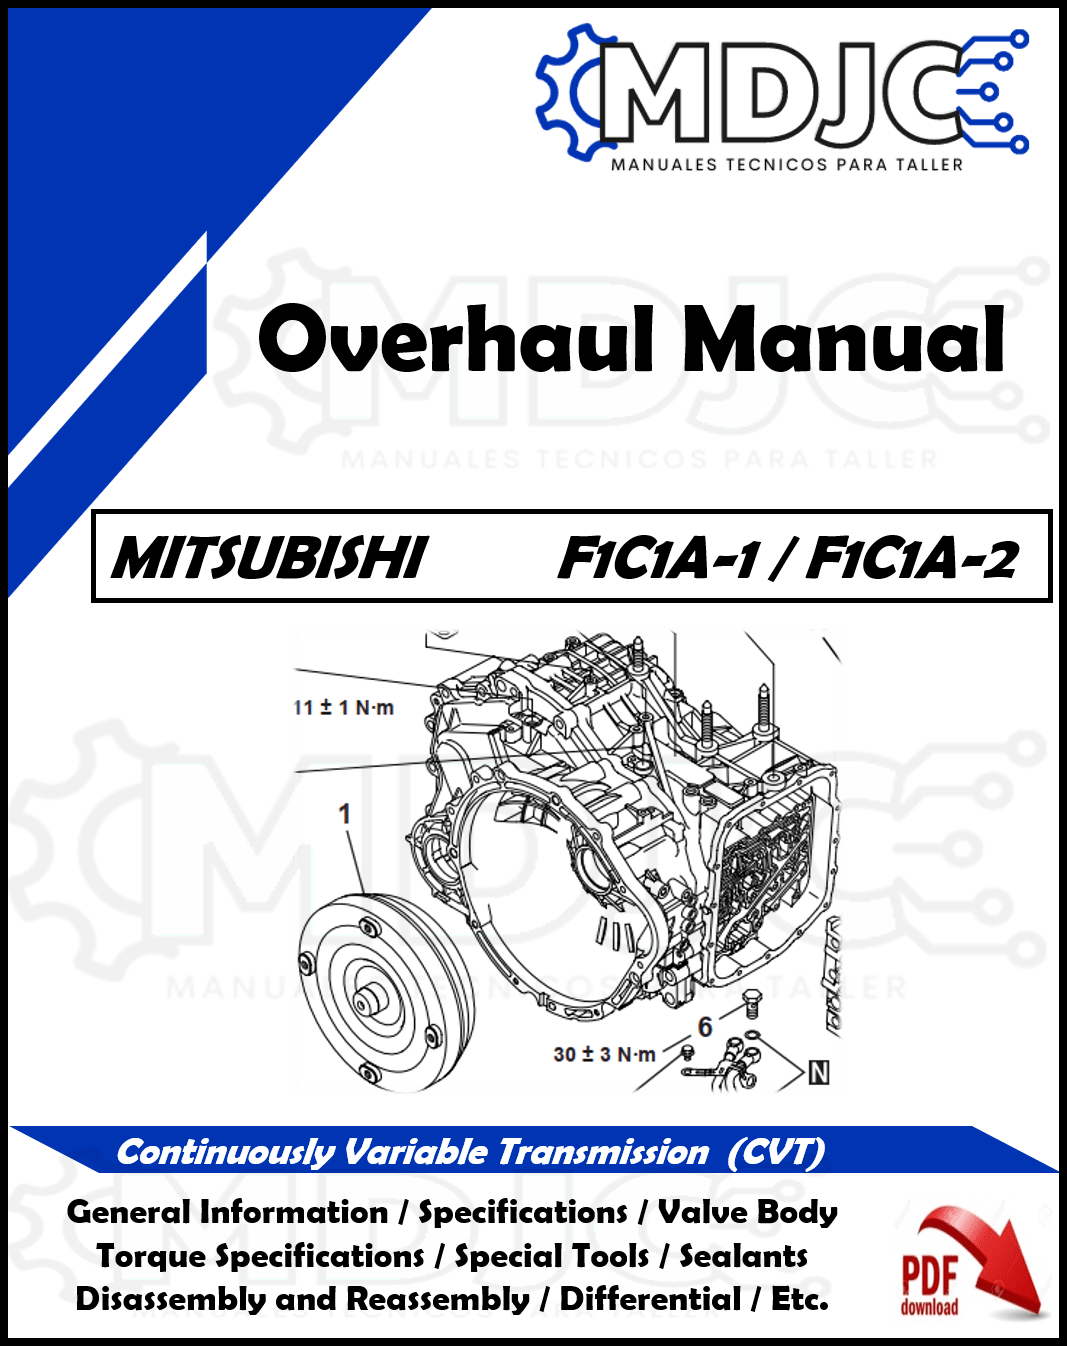 Manual de Taller (Overhaul) Caja CVT Mitsubishi F1C1A-1 / F1C1A-2